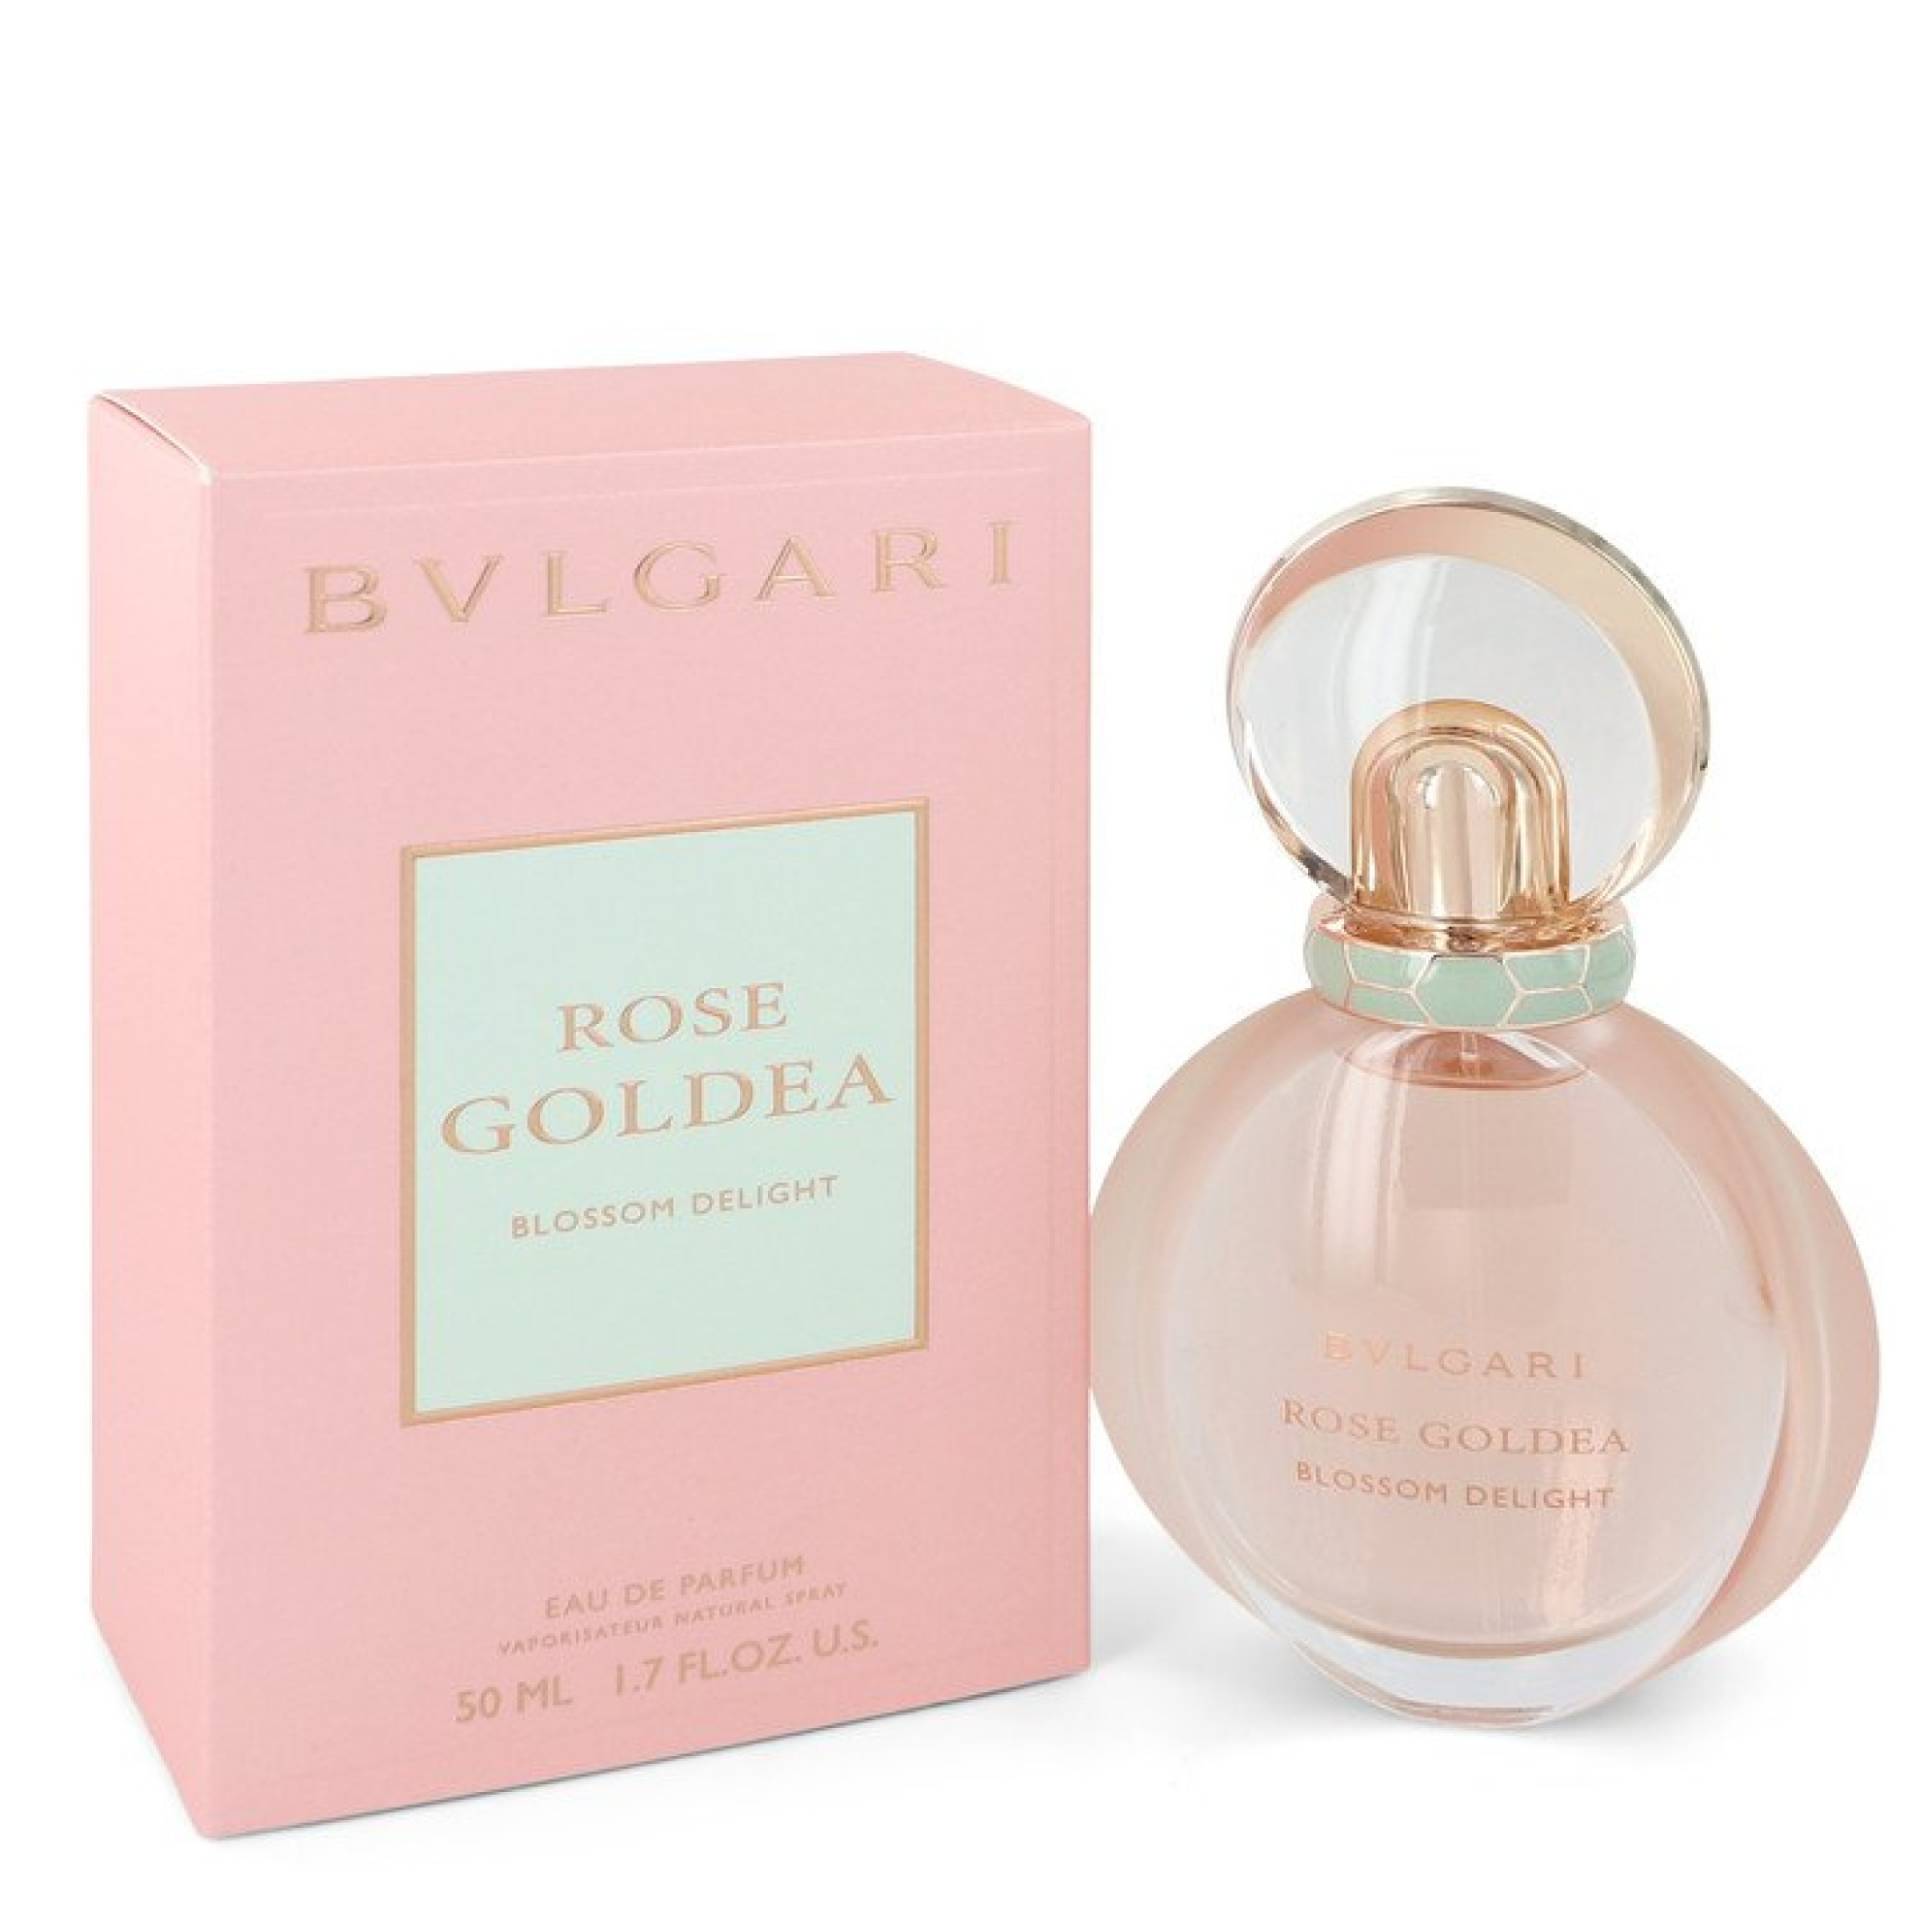 Bvlgari Rose Goldea Blossom Delight Eau De Parfum Spray 51 ml von Bvlgari